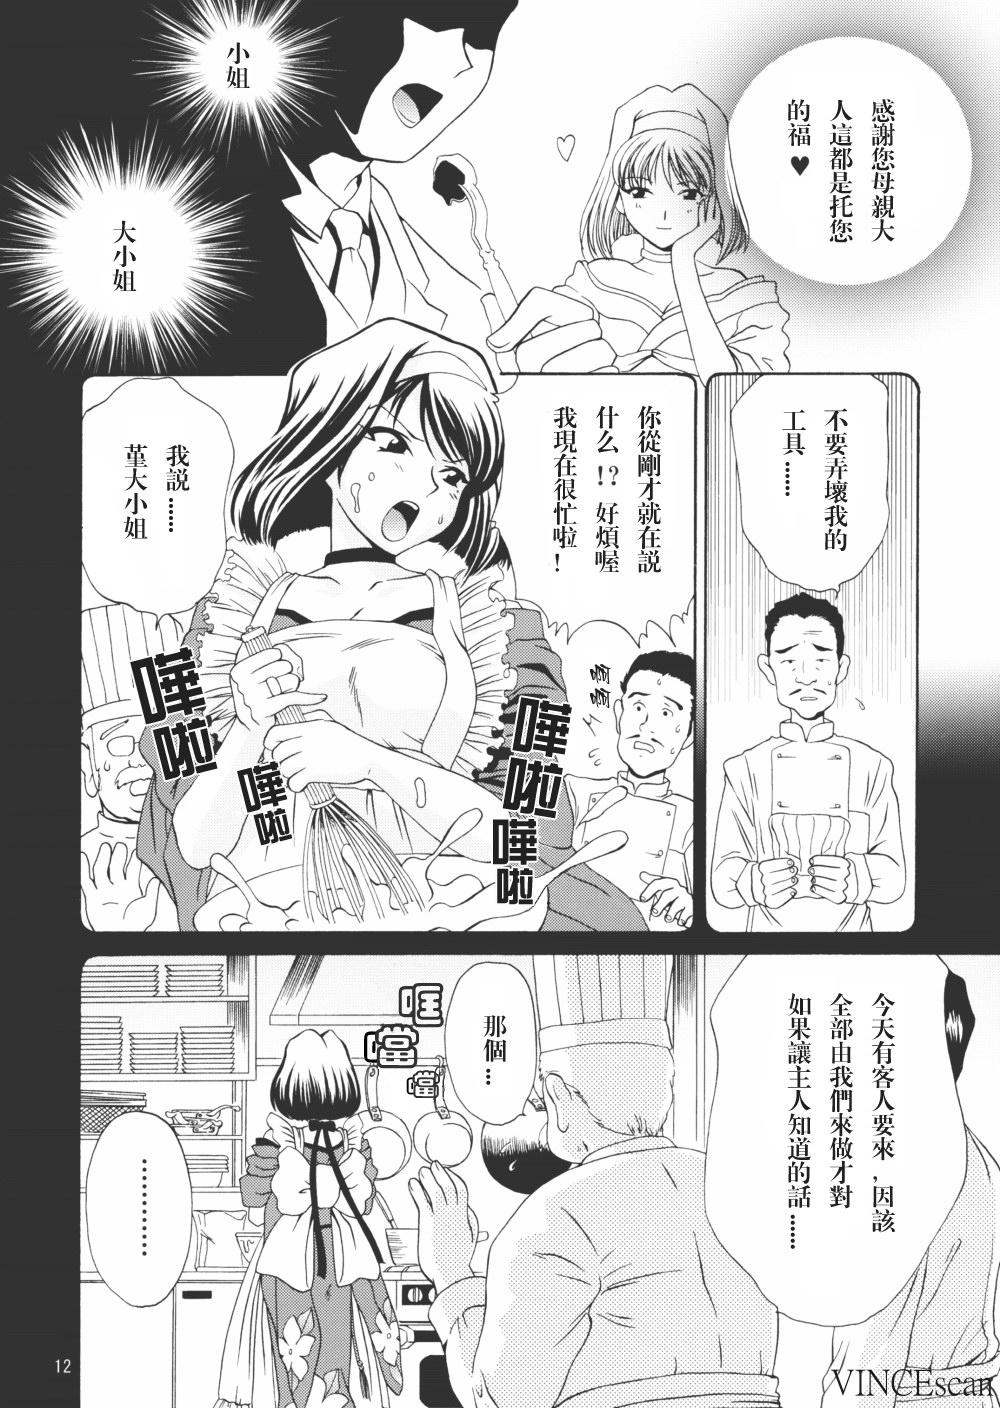 Maid Chocolate Panic - Sakura taisen Flash - Page 11